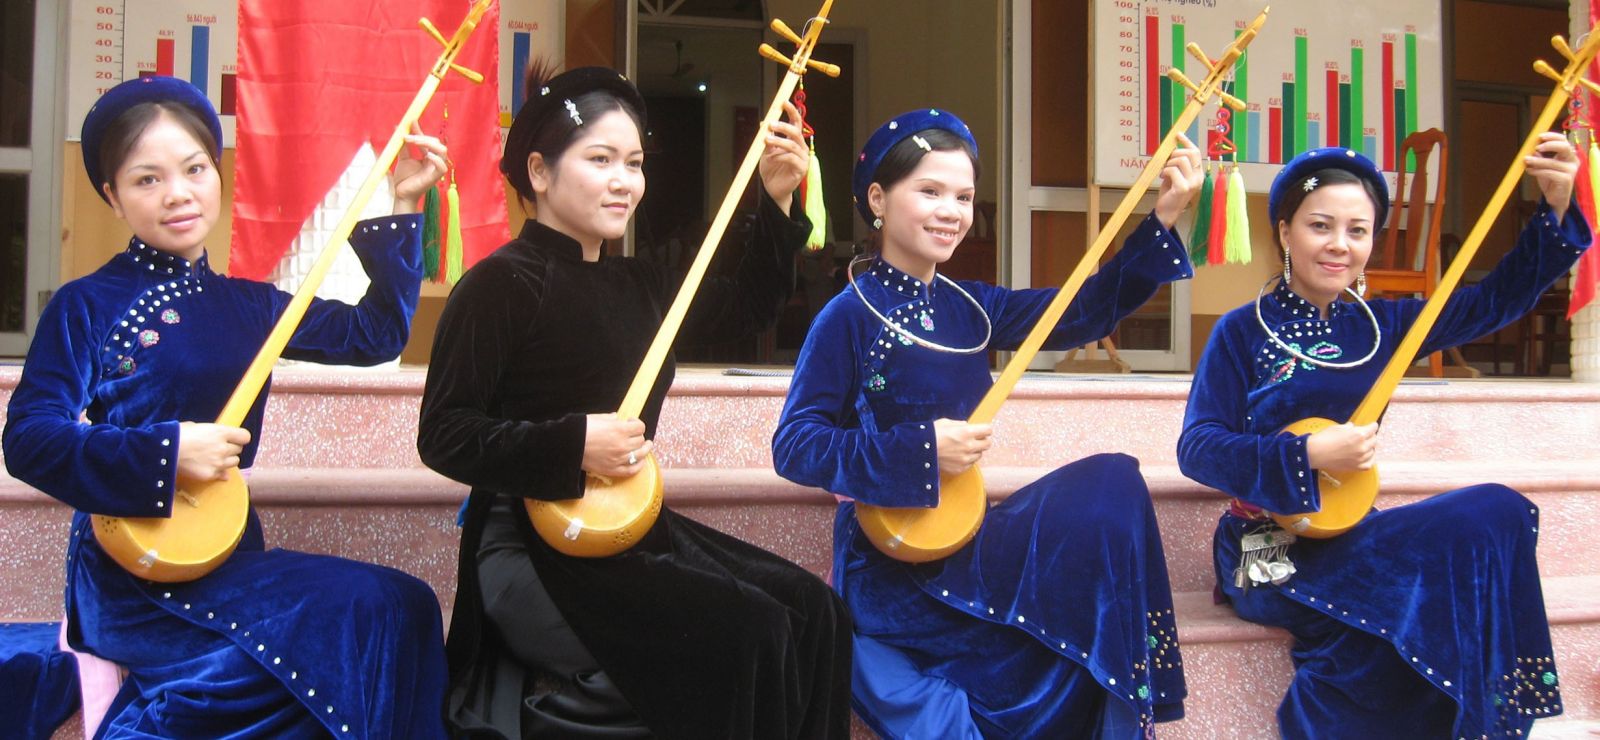 Tuyên Quang vừa thử nghiệm đưa nghệ thuật hát then vào hoạt động du lịch